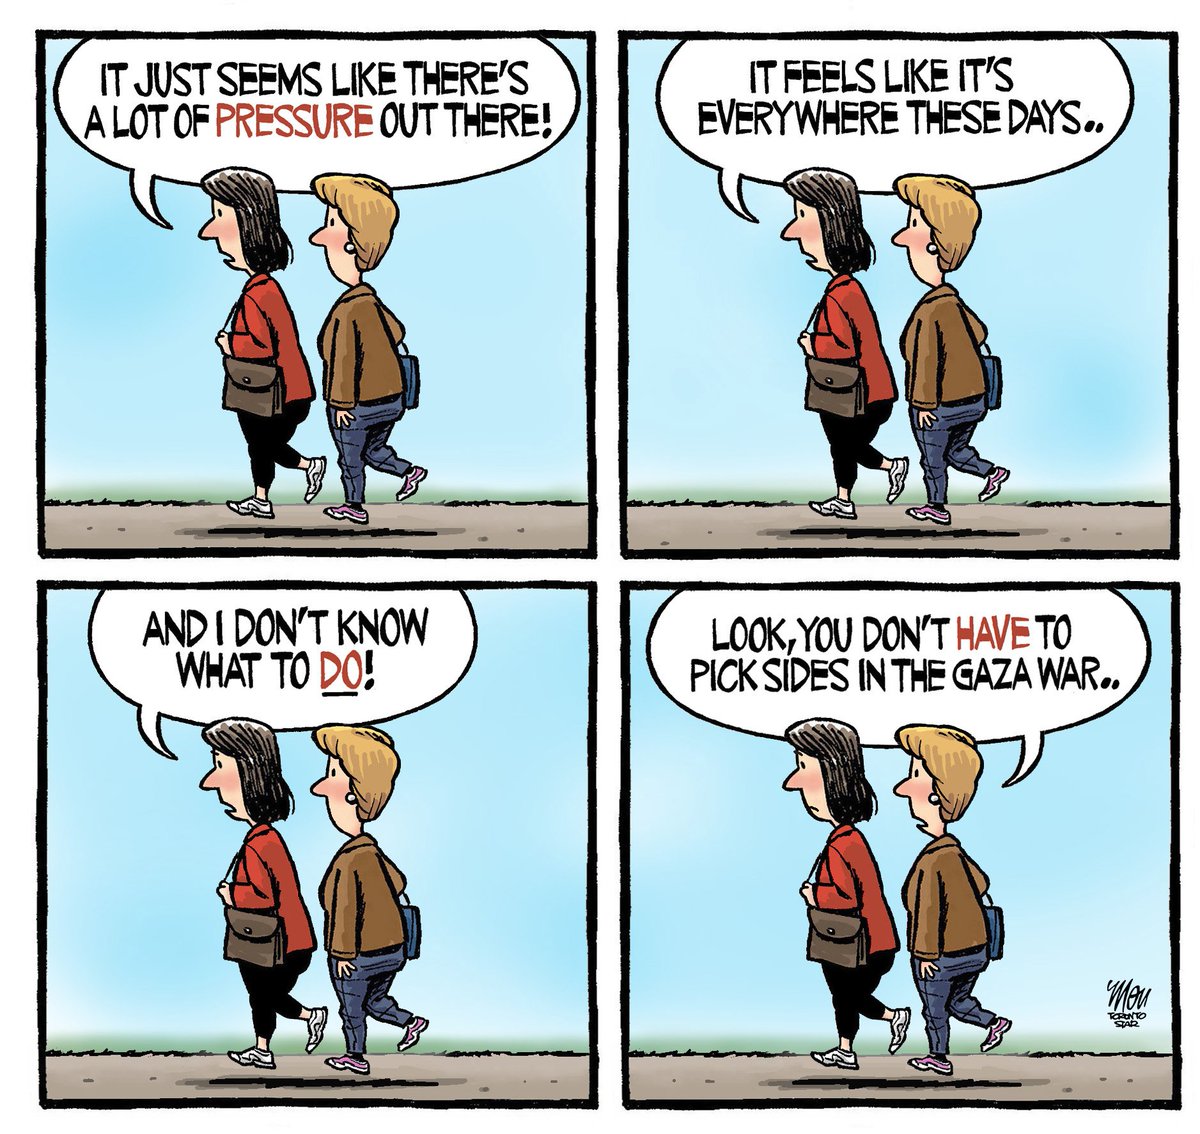 Please enjoy my cartoon for Thursday's @TorontoStar